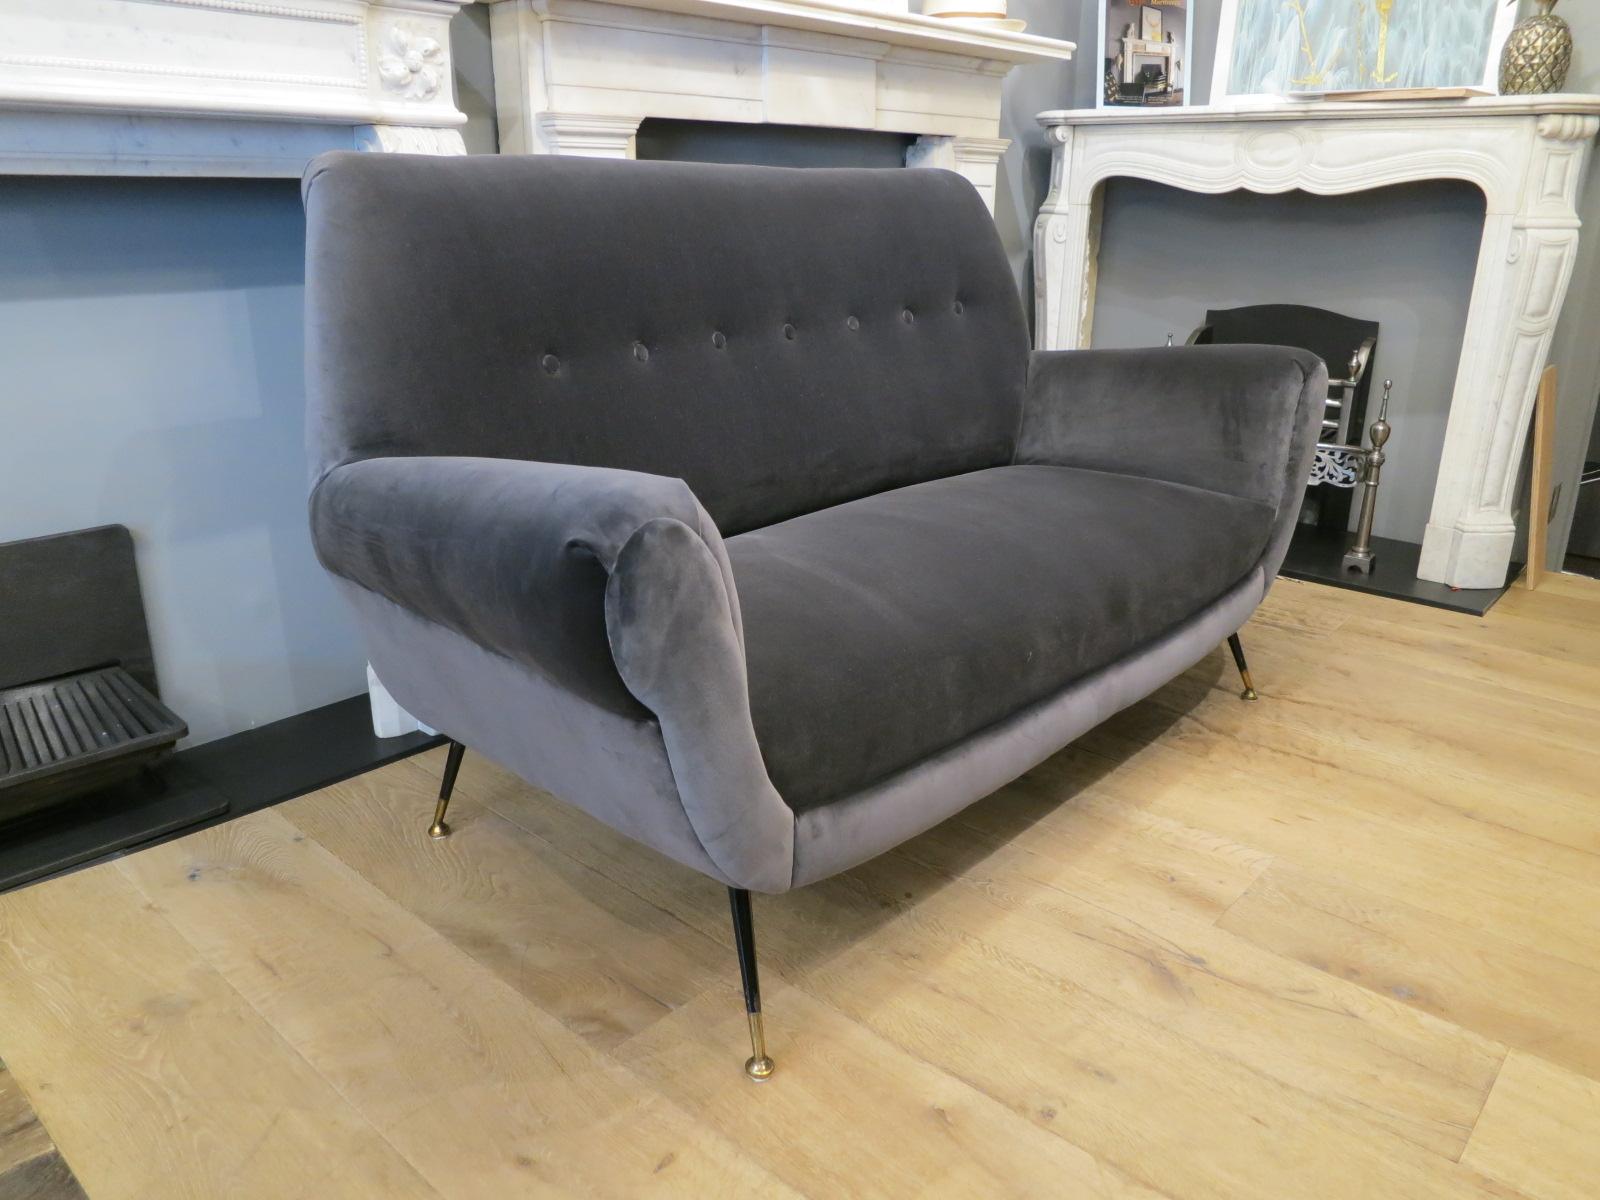 A two-seat Italian midcentury sofa in steel blue velvet, by Gigi Radice for Minotti.